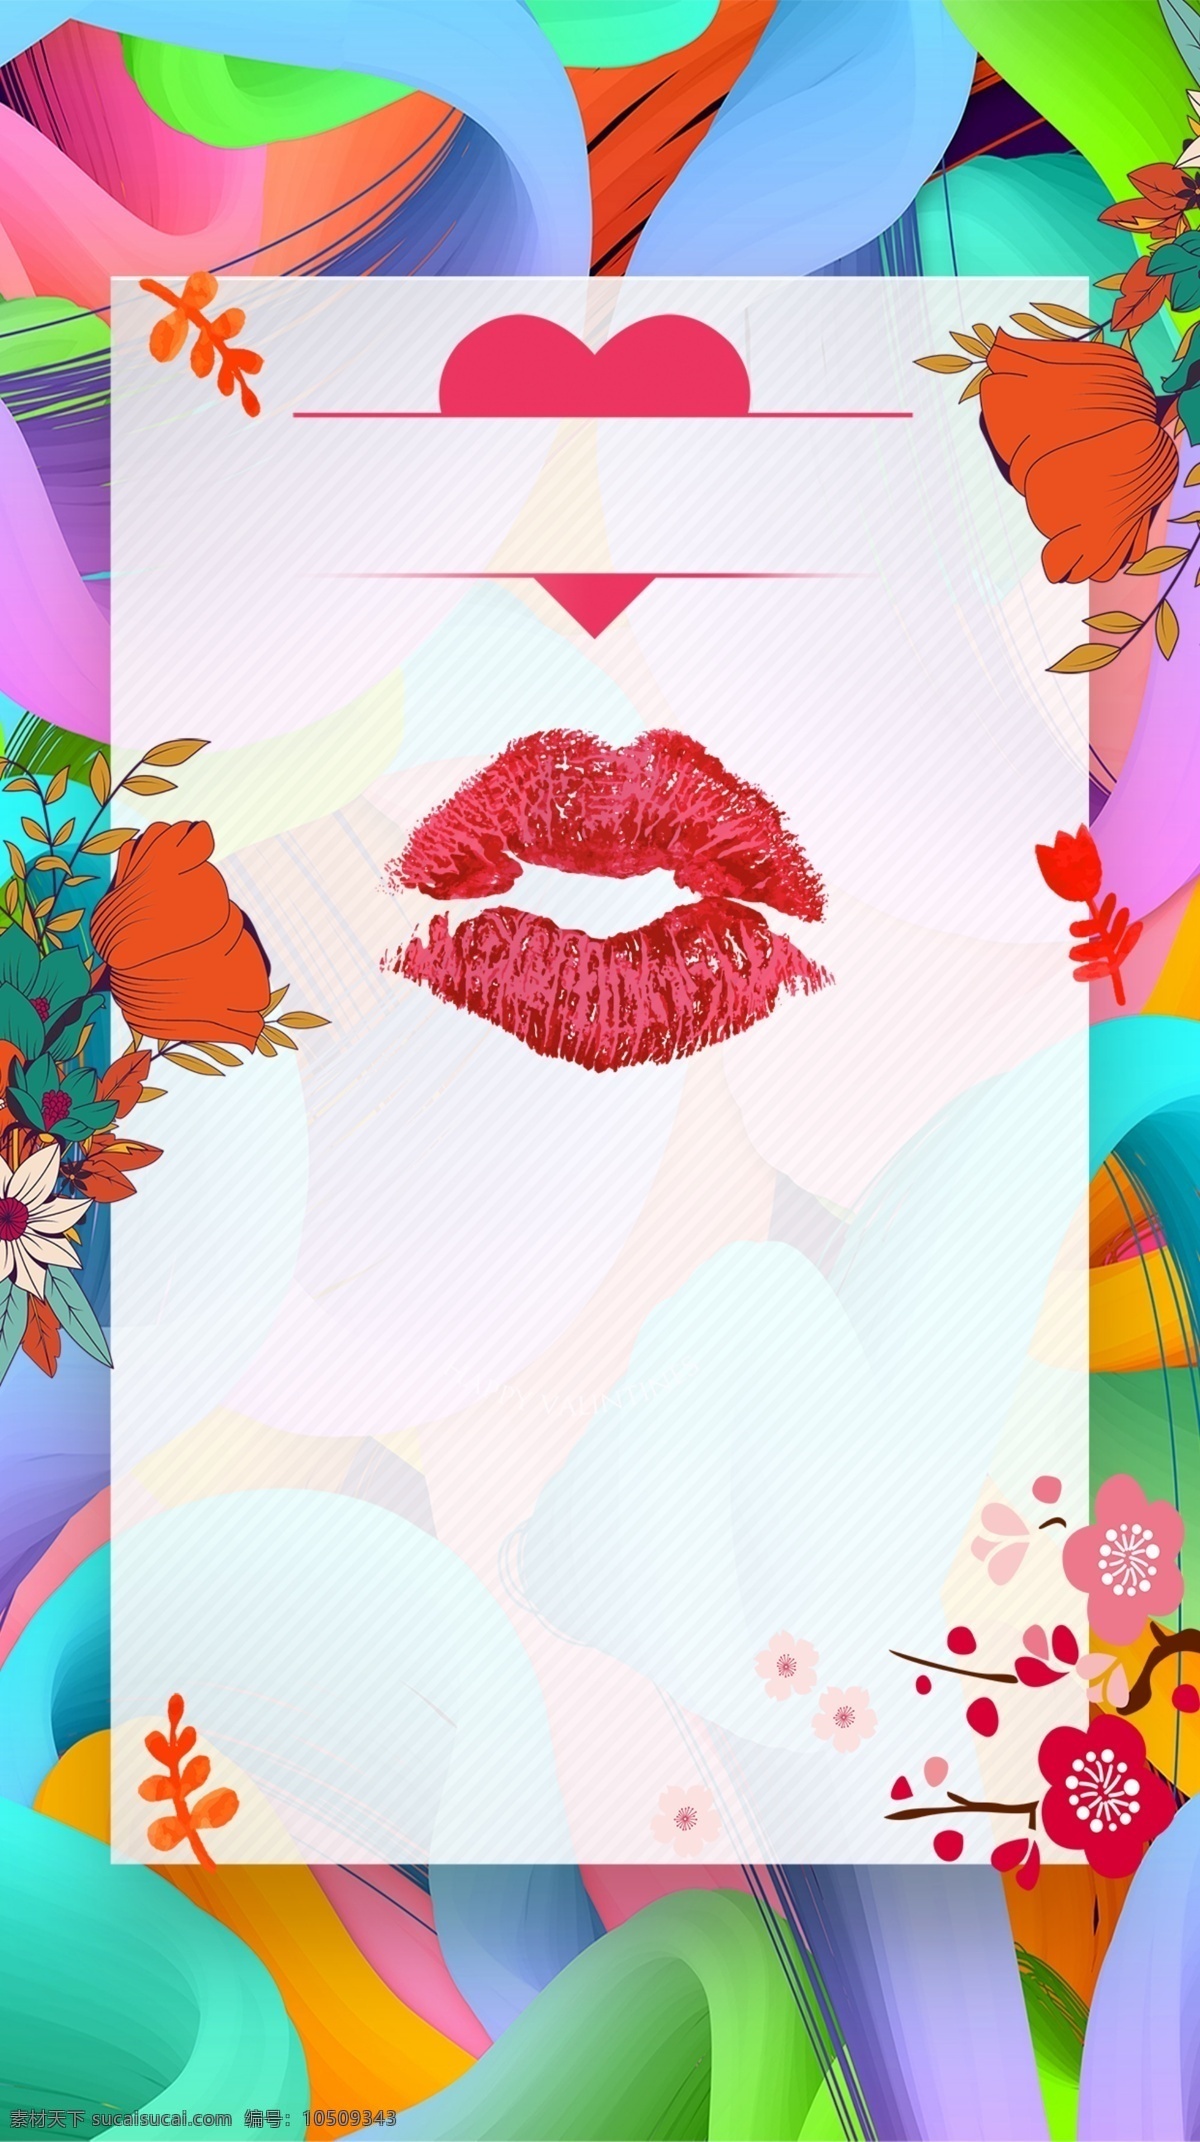 爱 情人节 彩绘 h5 背景 水彩 红唇 红心 花朵 手绘 色彩绚丽 214 2月14 文化艺术 节日庆祝